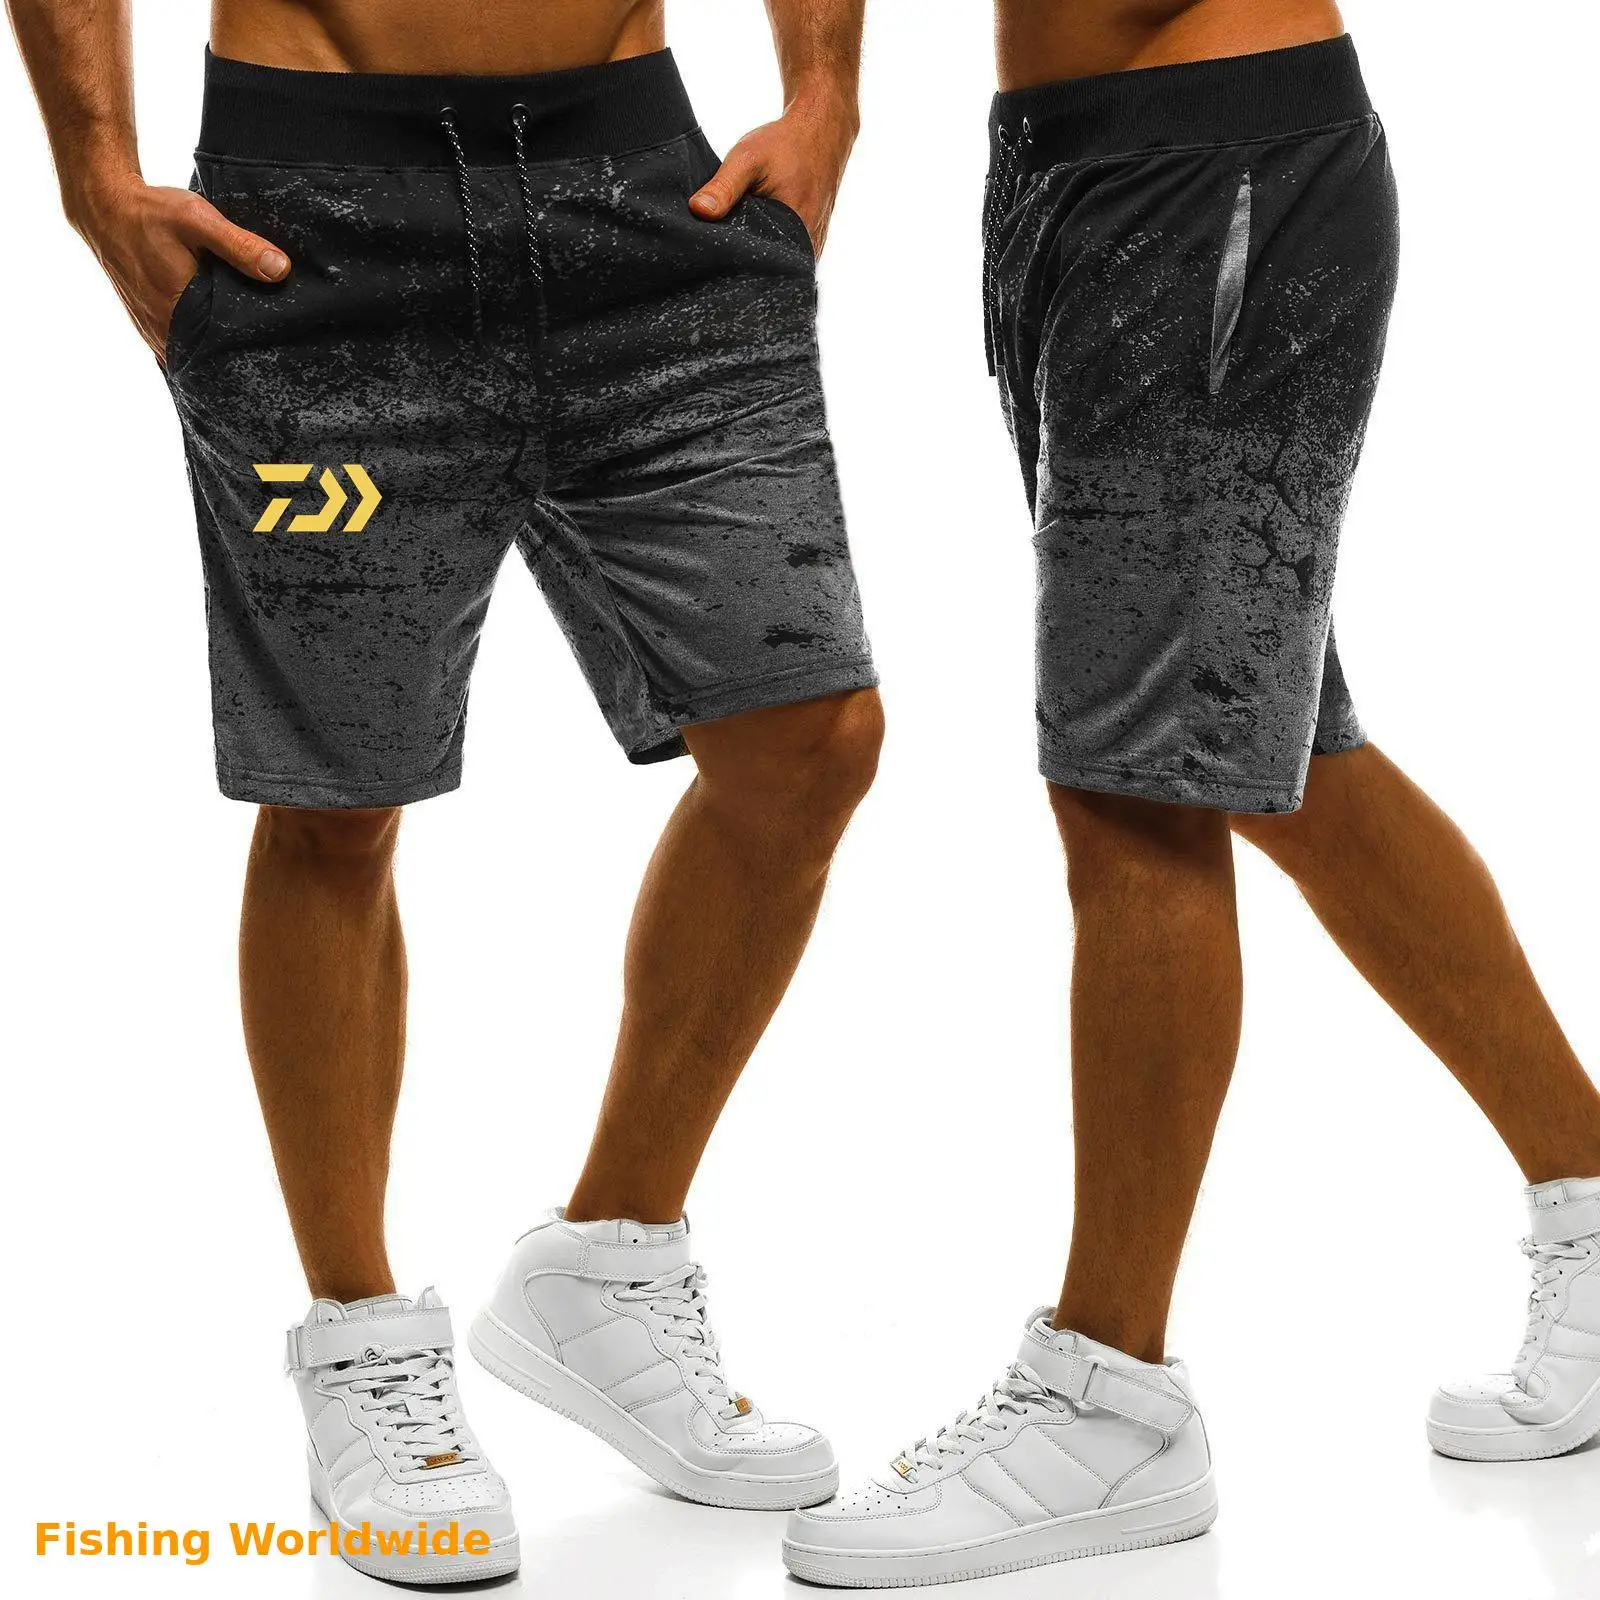 Новые мужские летние спортивные шорты Dawa для рыбалки на открытом | Шорты рыбацкие -4001123592882